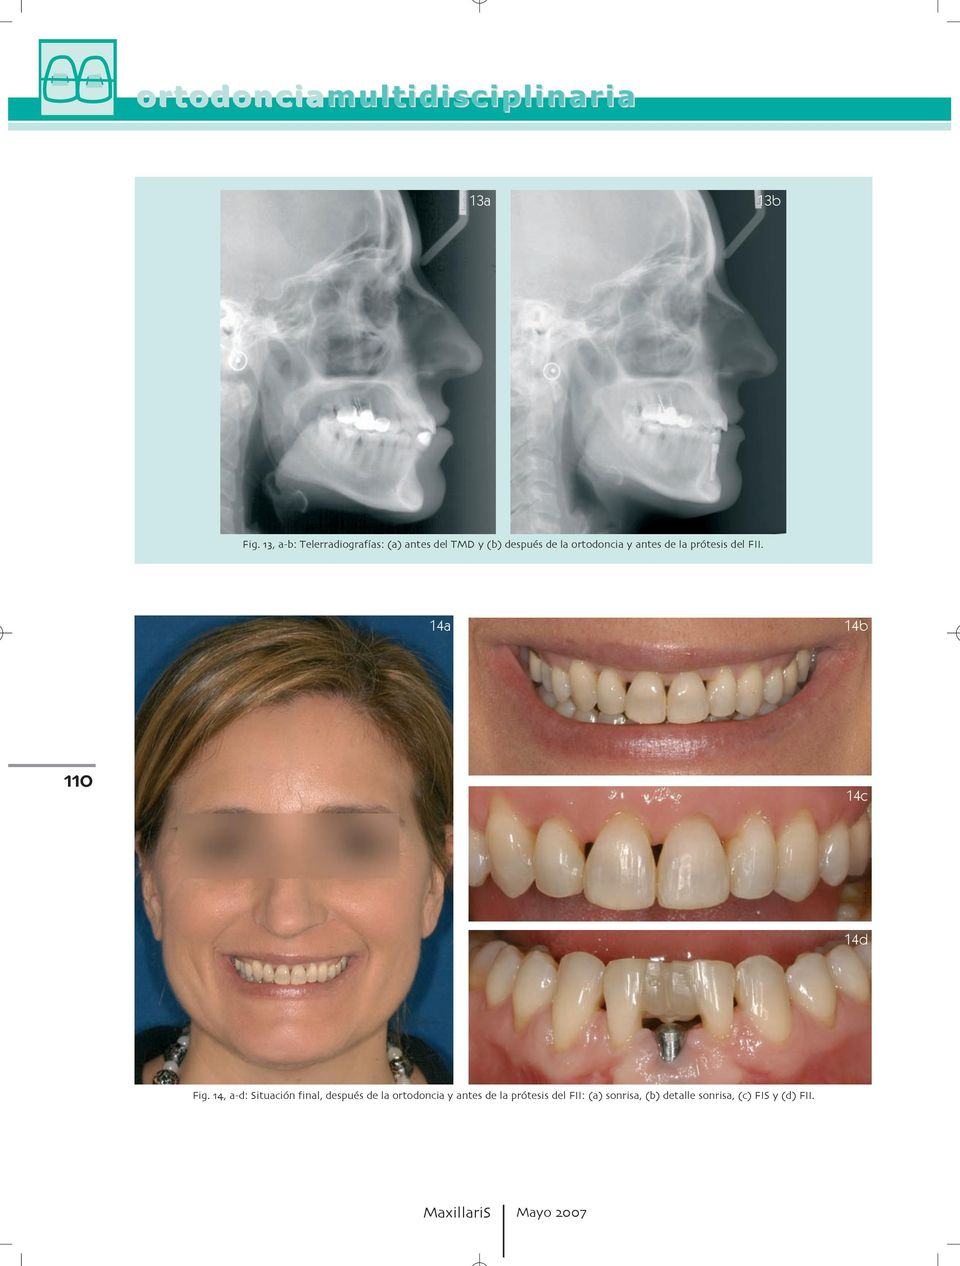 14c 14d Fig a d: Situación final después de la ortodoncia y antes